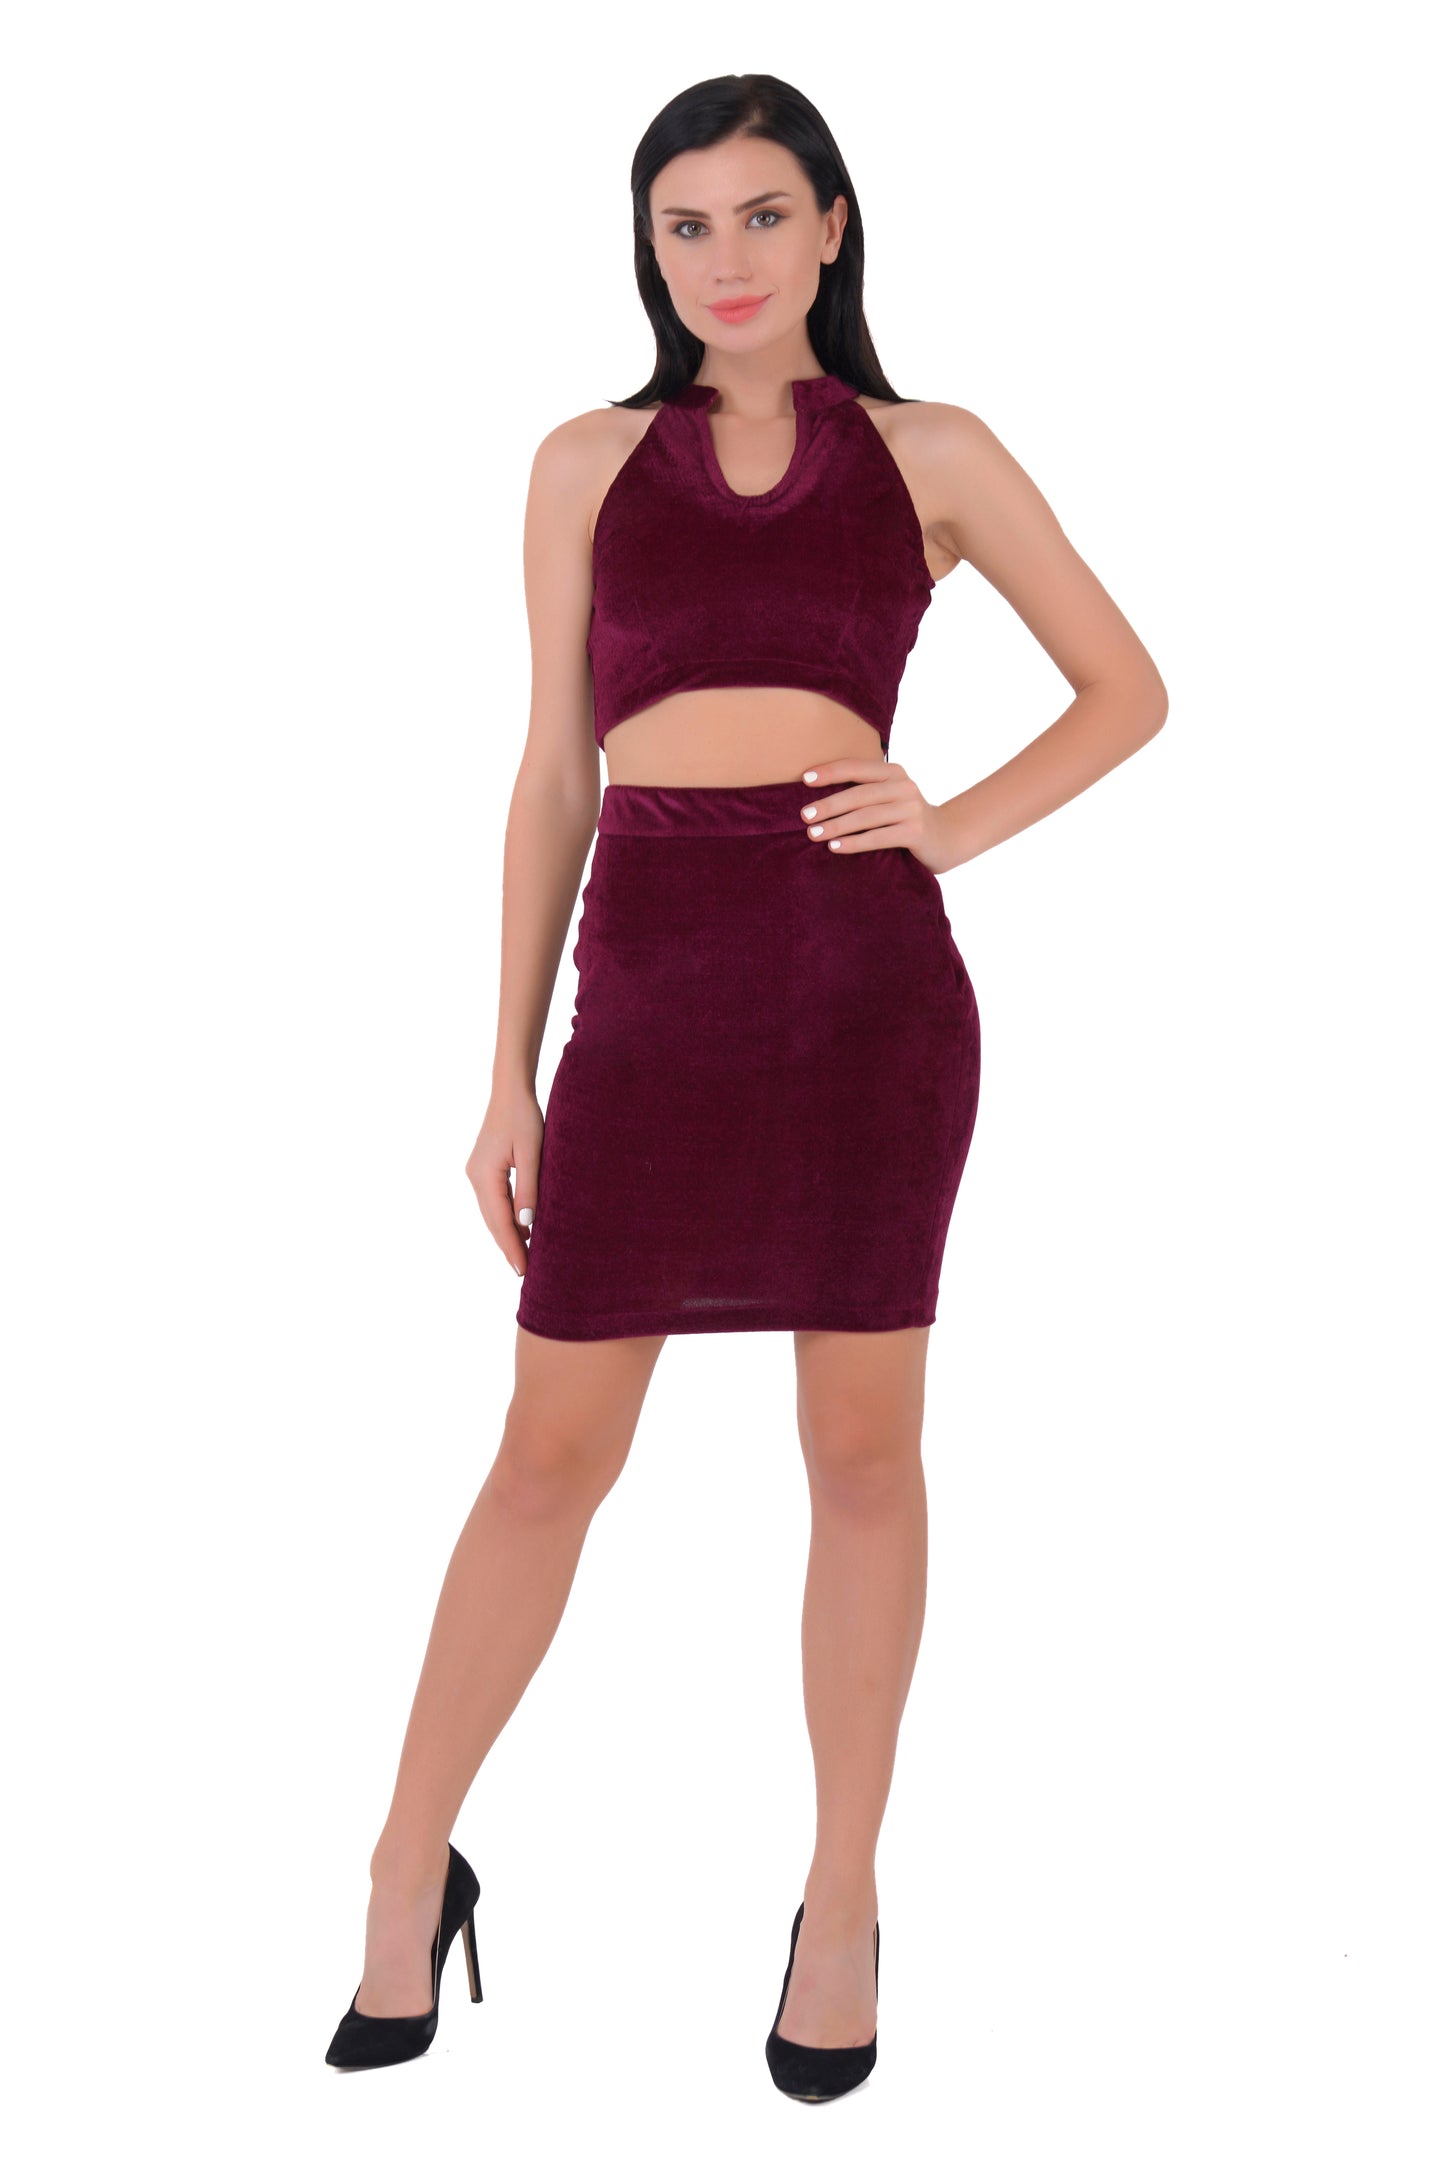 Velvet top and Skirt set